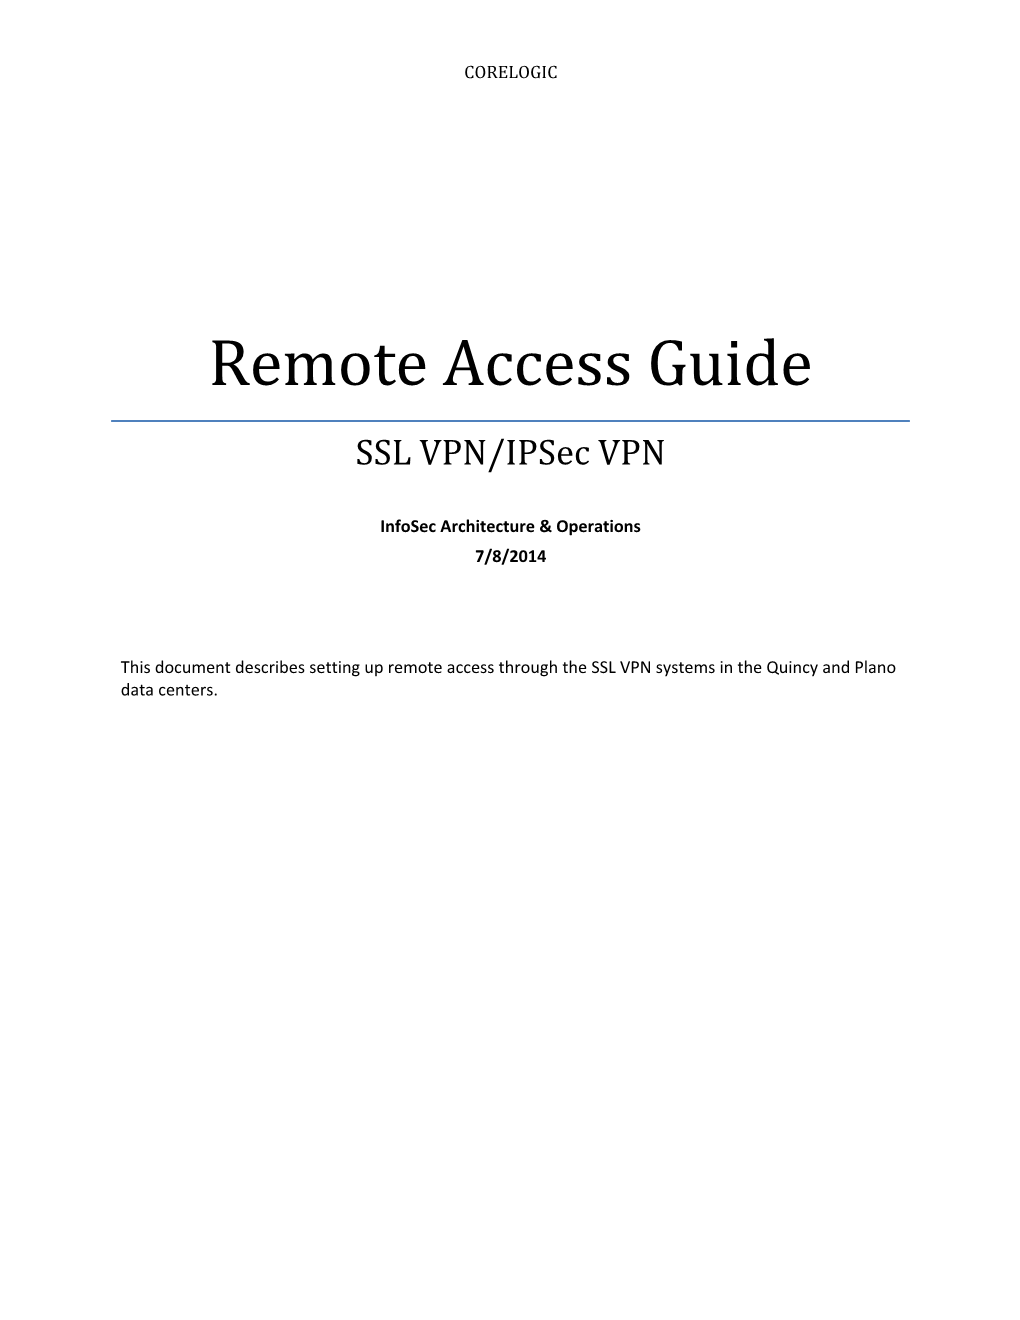 Remote Access Guide